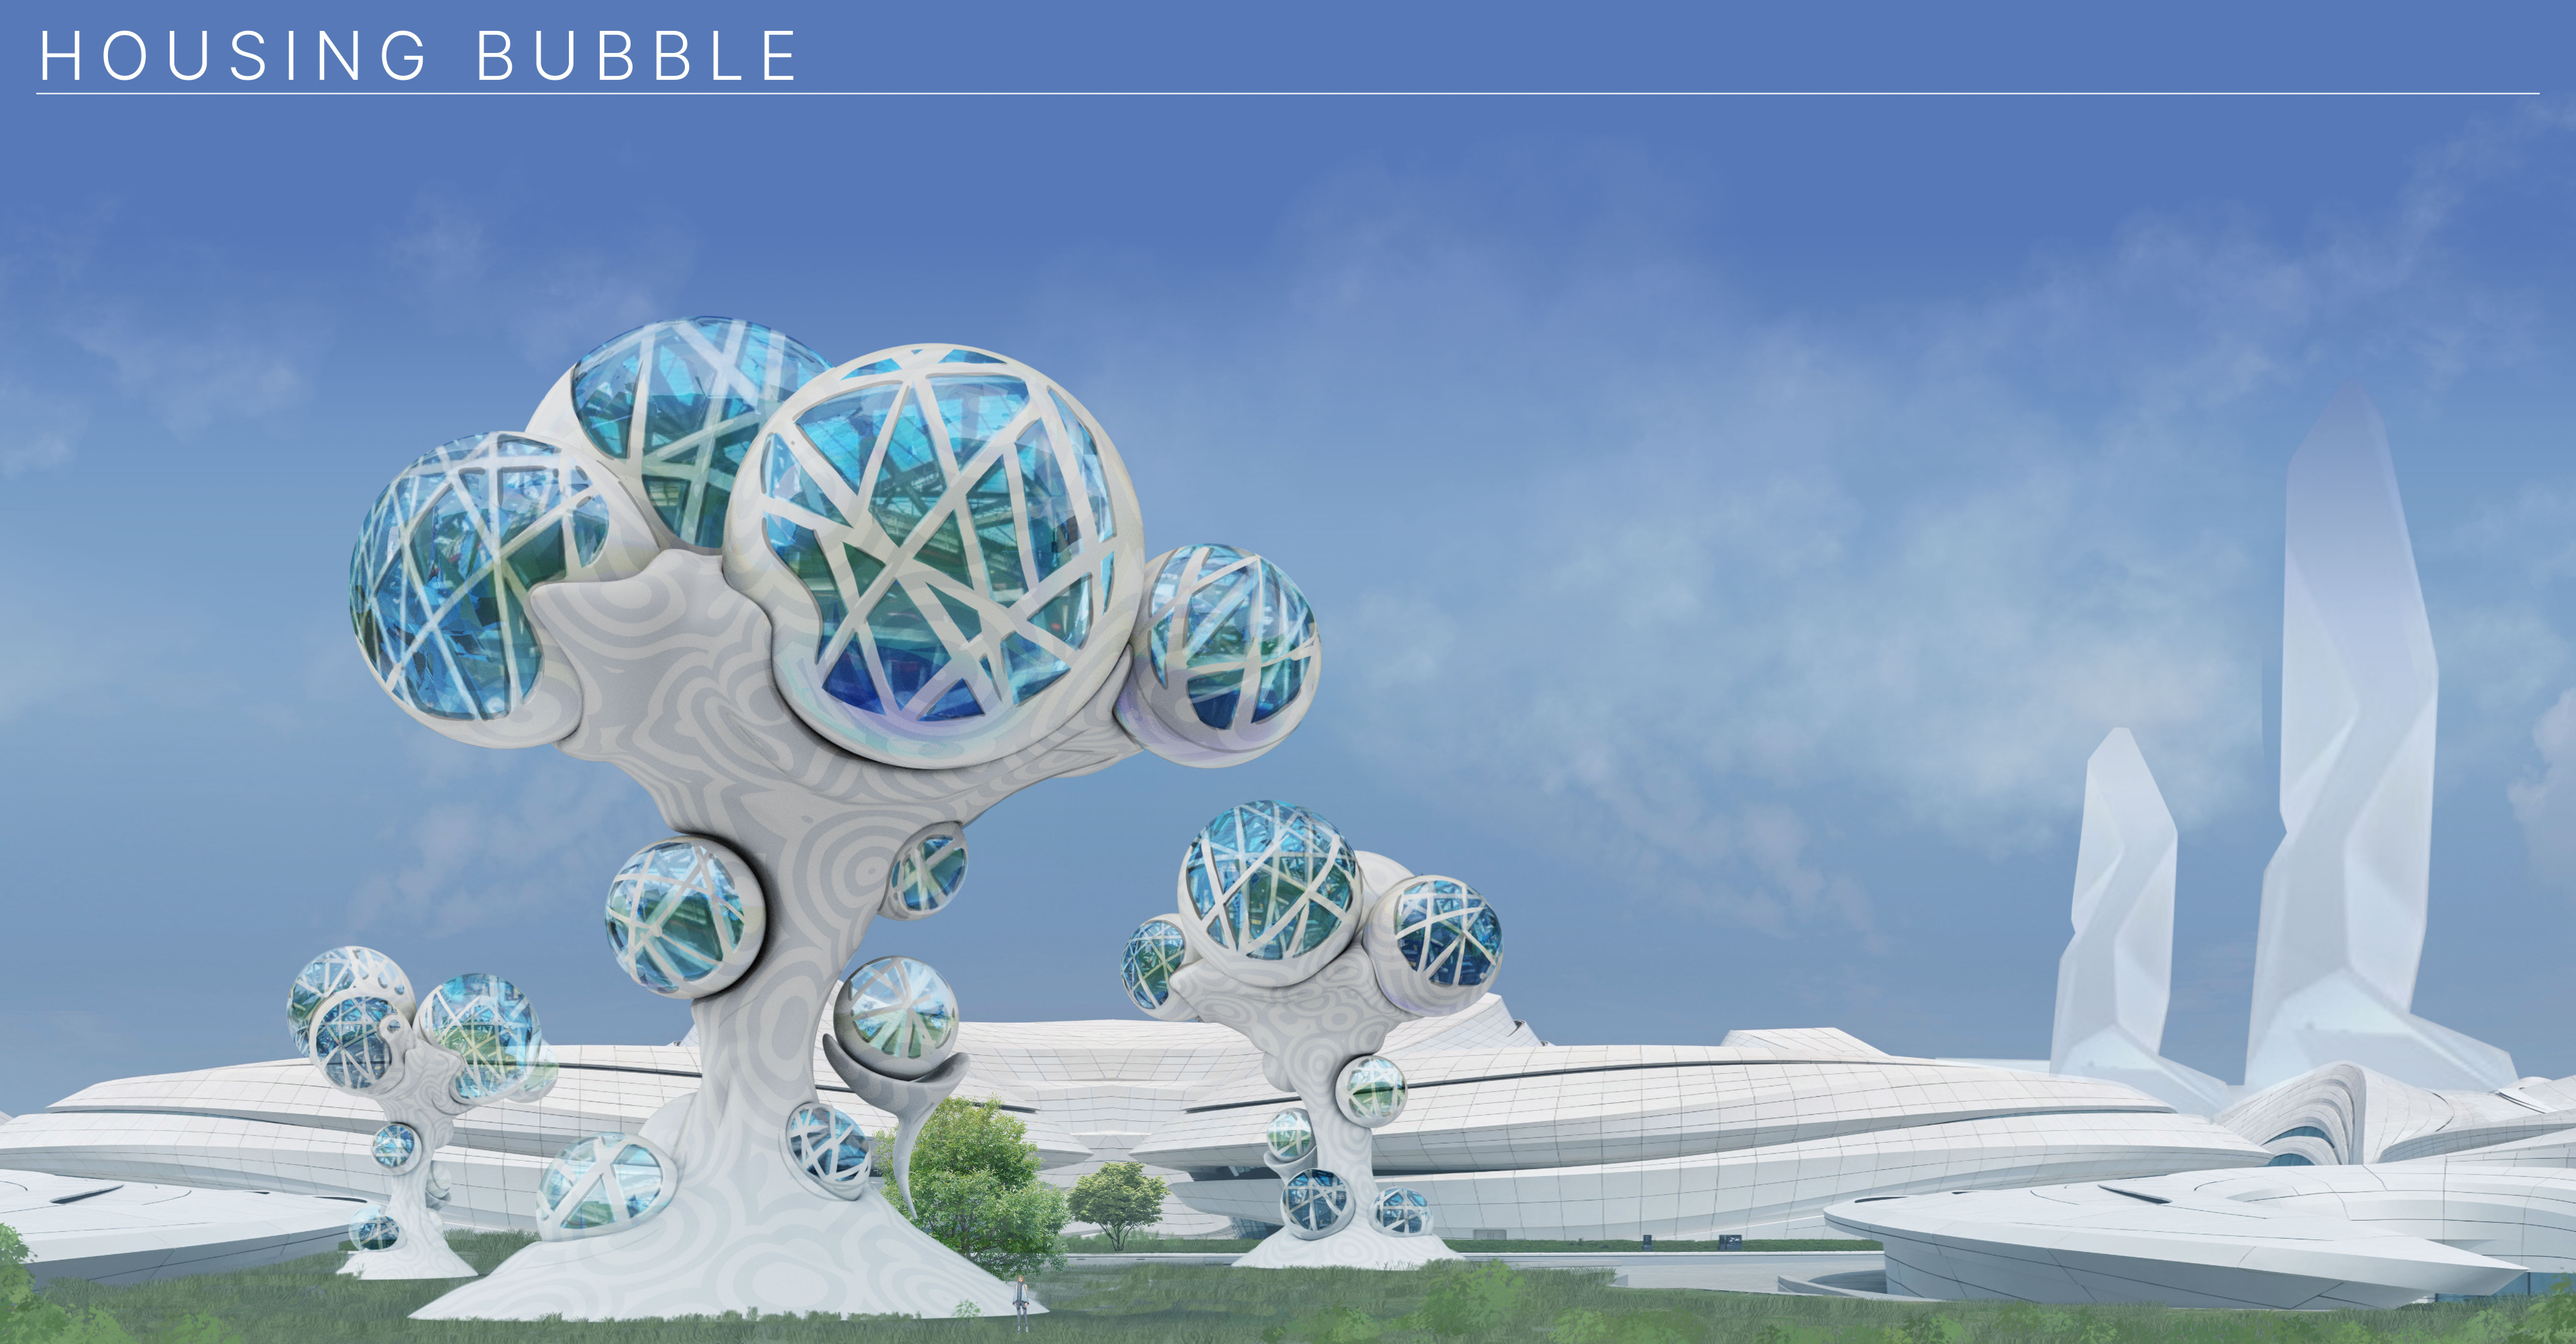 Housing Bubbles -  Modular Utopia architectural design.